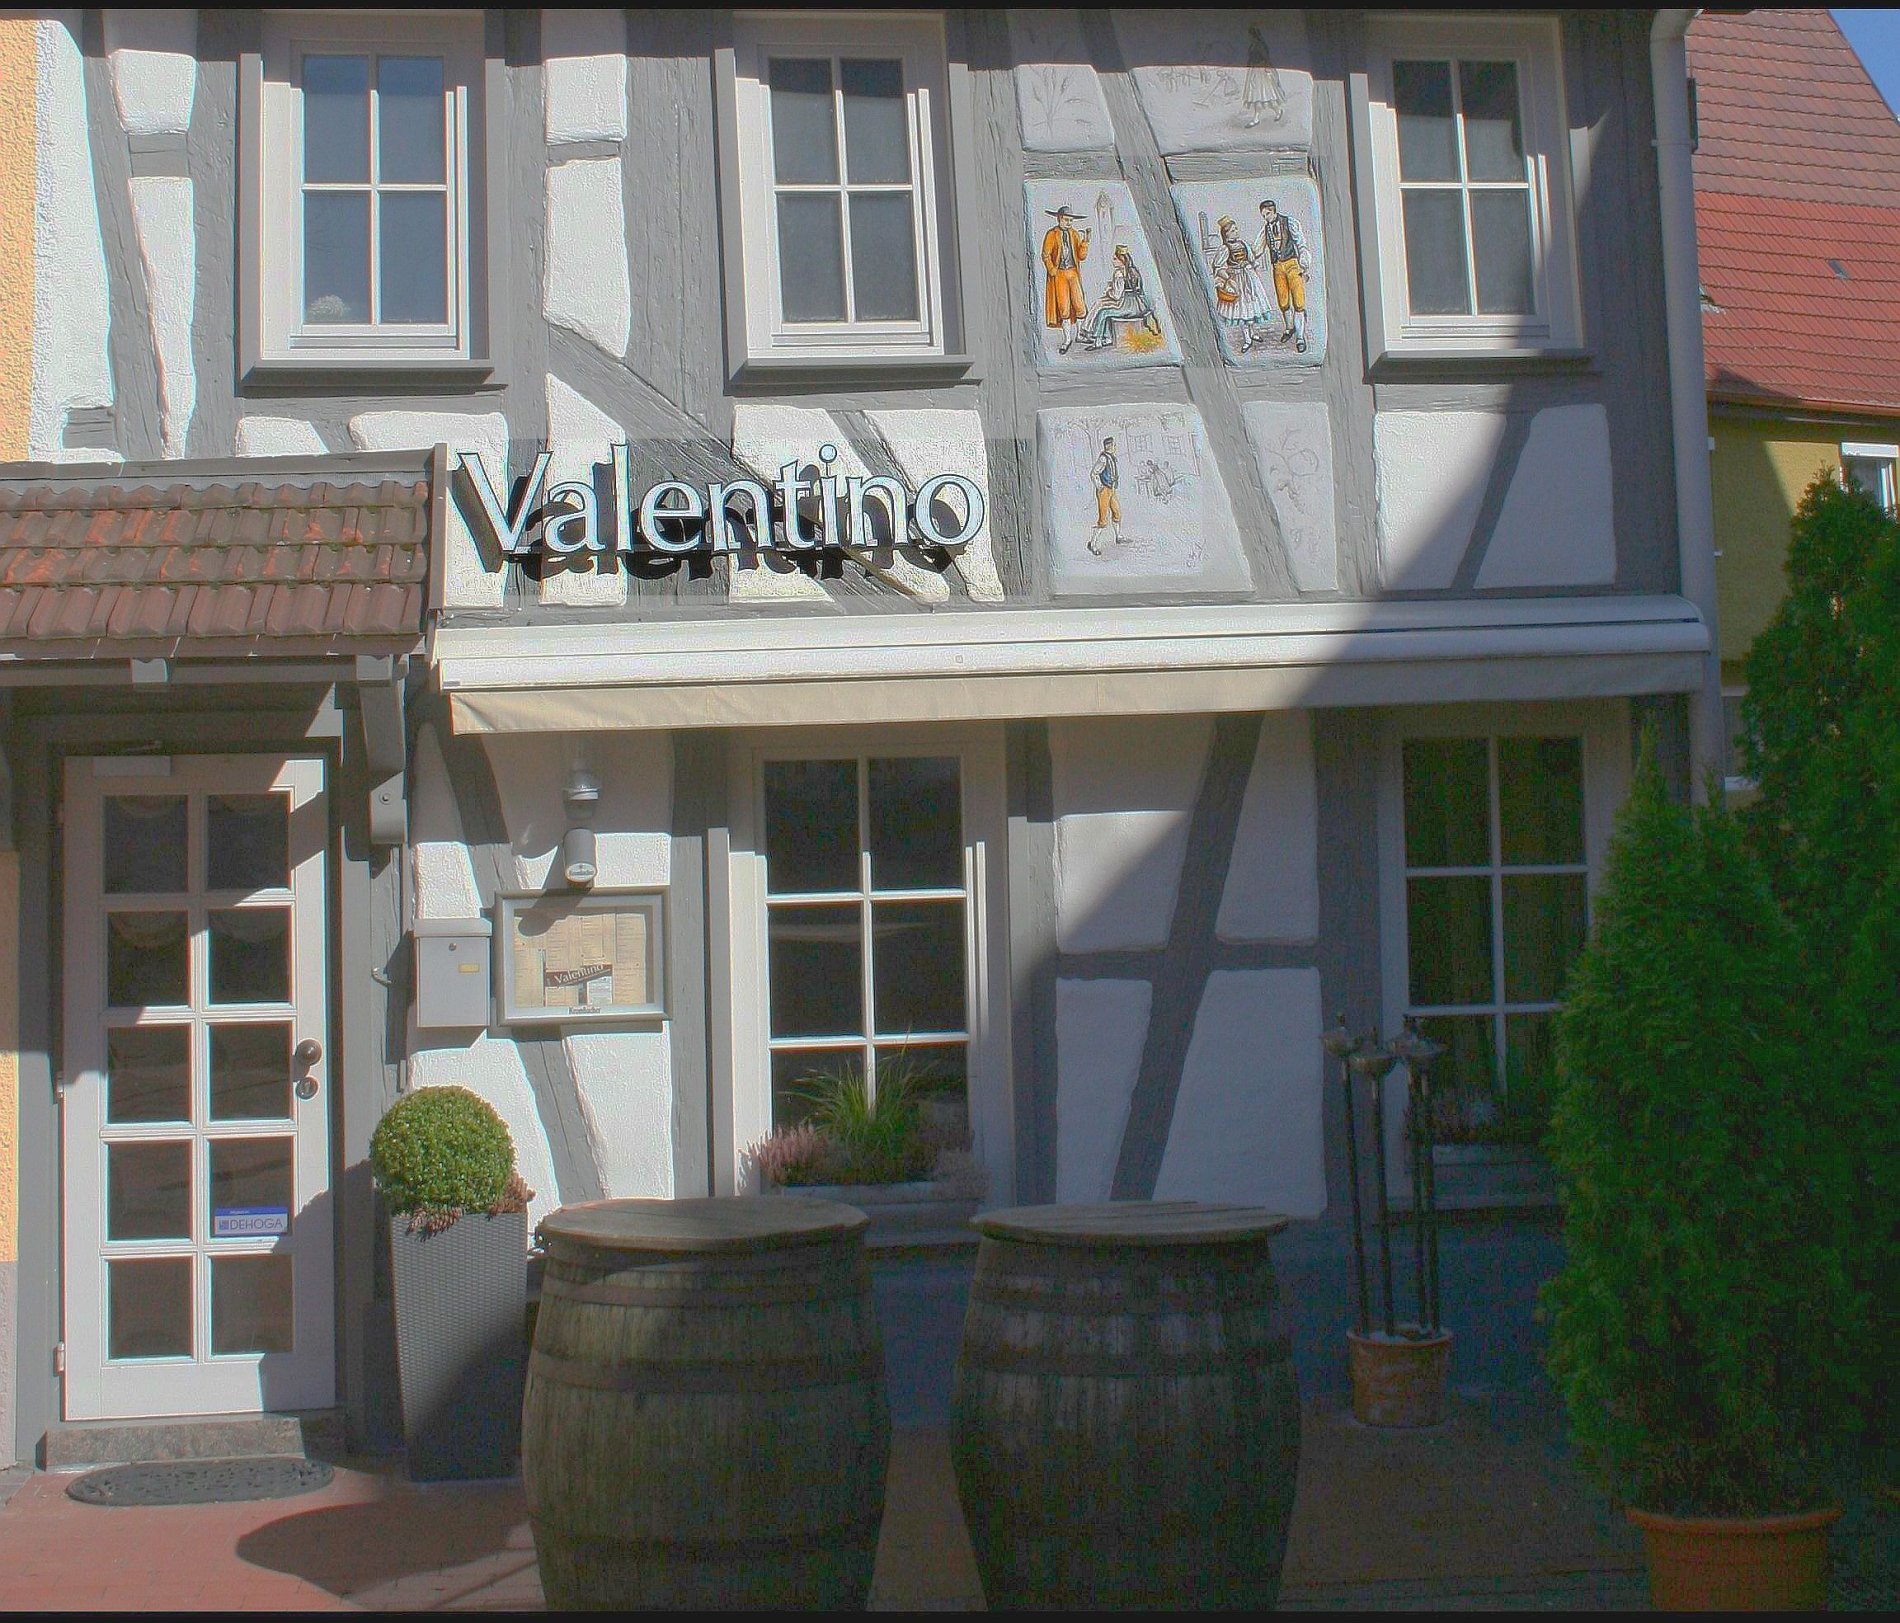 Gastronomie in Albstadt: Weinbistro, Cafe, Bar Valentino in Albstadt-Ebingen